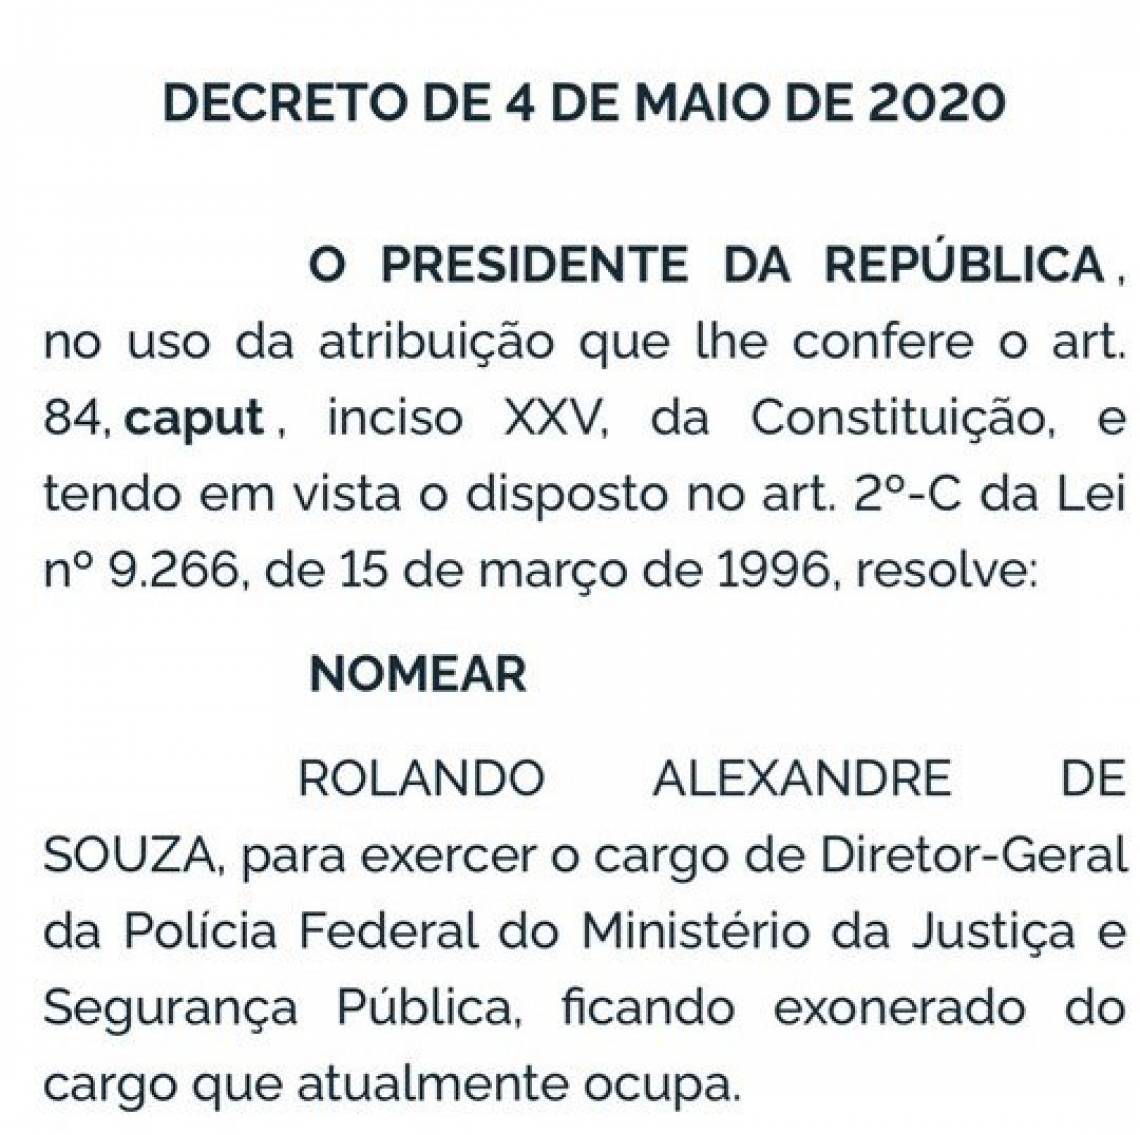 Rolando Alexandre de Souza assumirá o cargo de diretor-geral da Polícia Federal (PF)